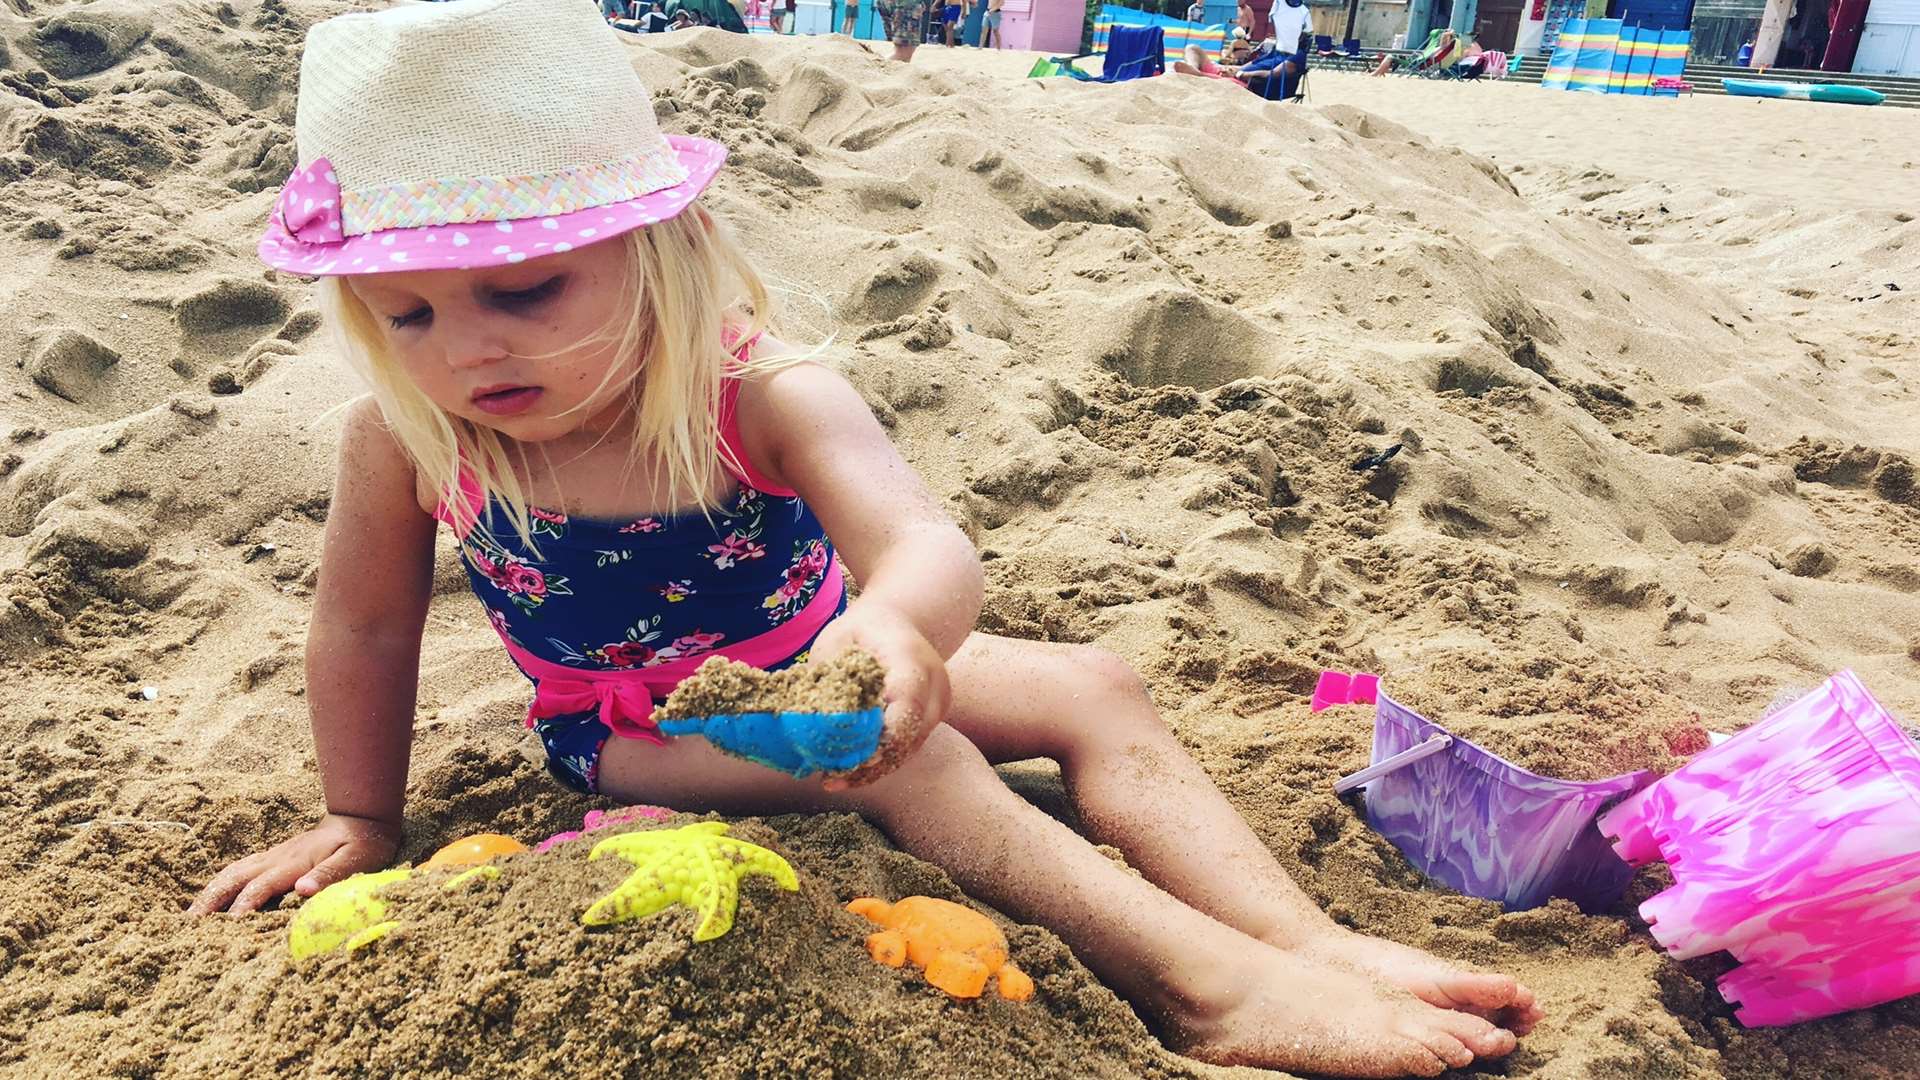 Life's a beach when you're three.